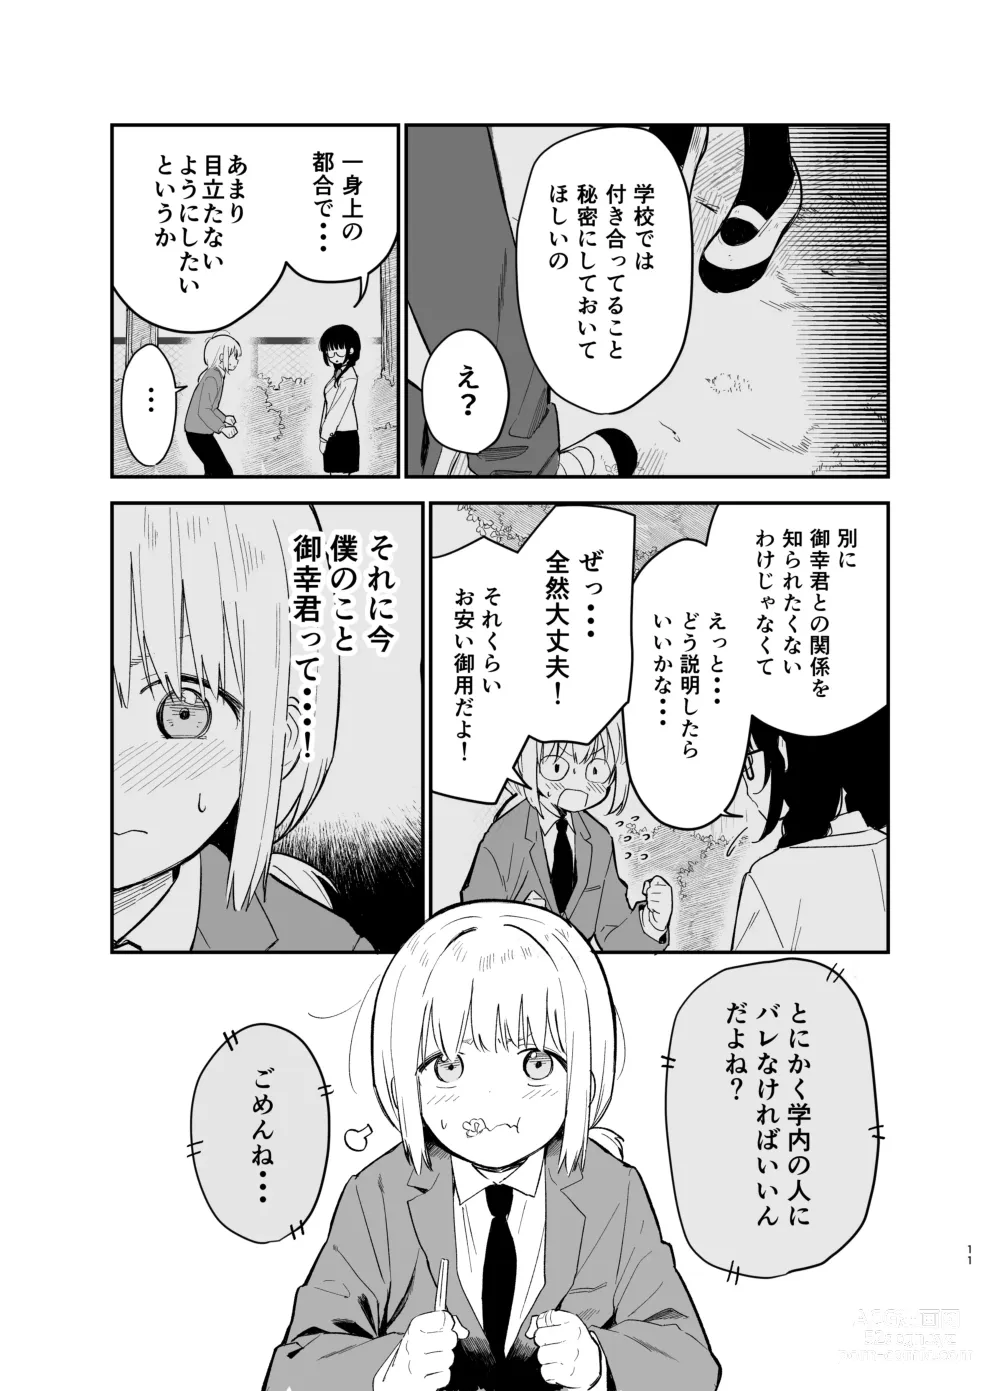 Page 11 of doujinshi Soushi Souai.